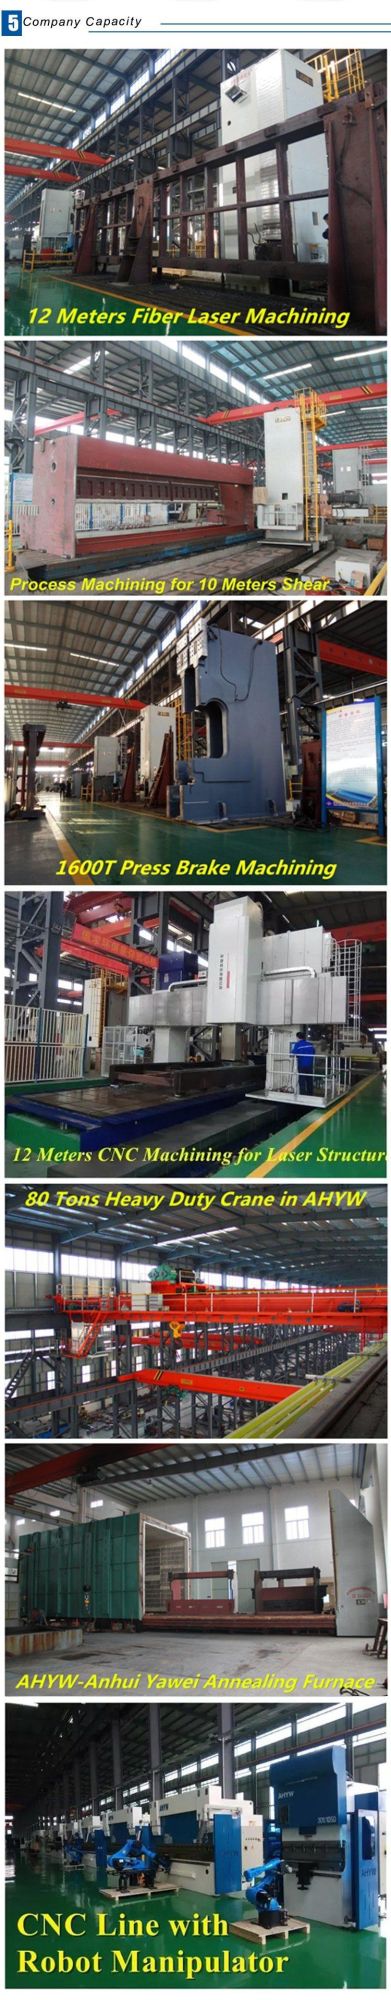 Ywgs 13X4000 4m Length CNC Sheet Guillotine Shearing Machine Tooling